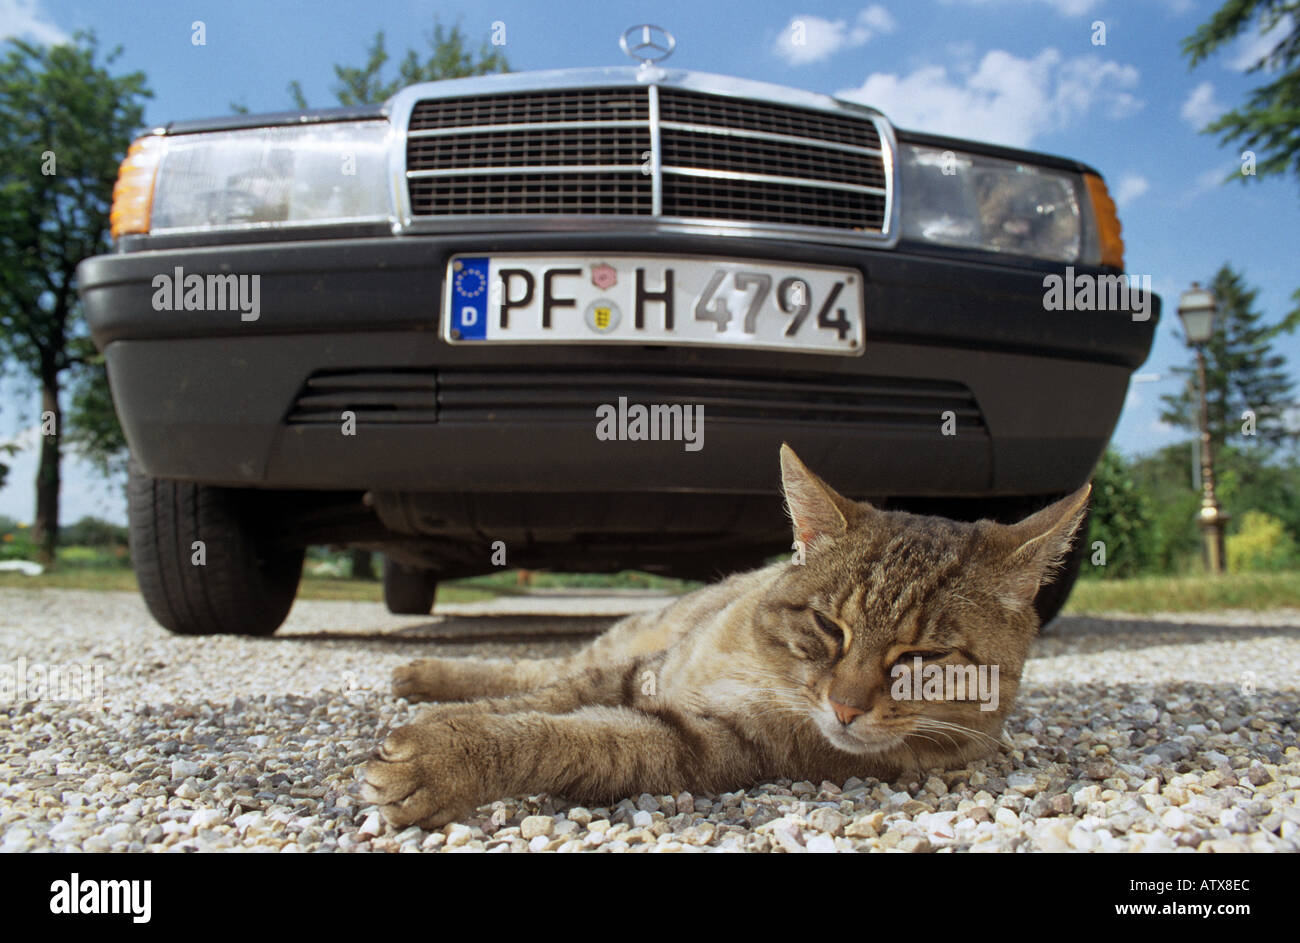 Pericolo : Gatto sdraiato nella parte anteriore di una macchina Foto Stock